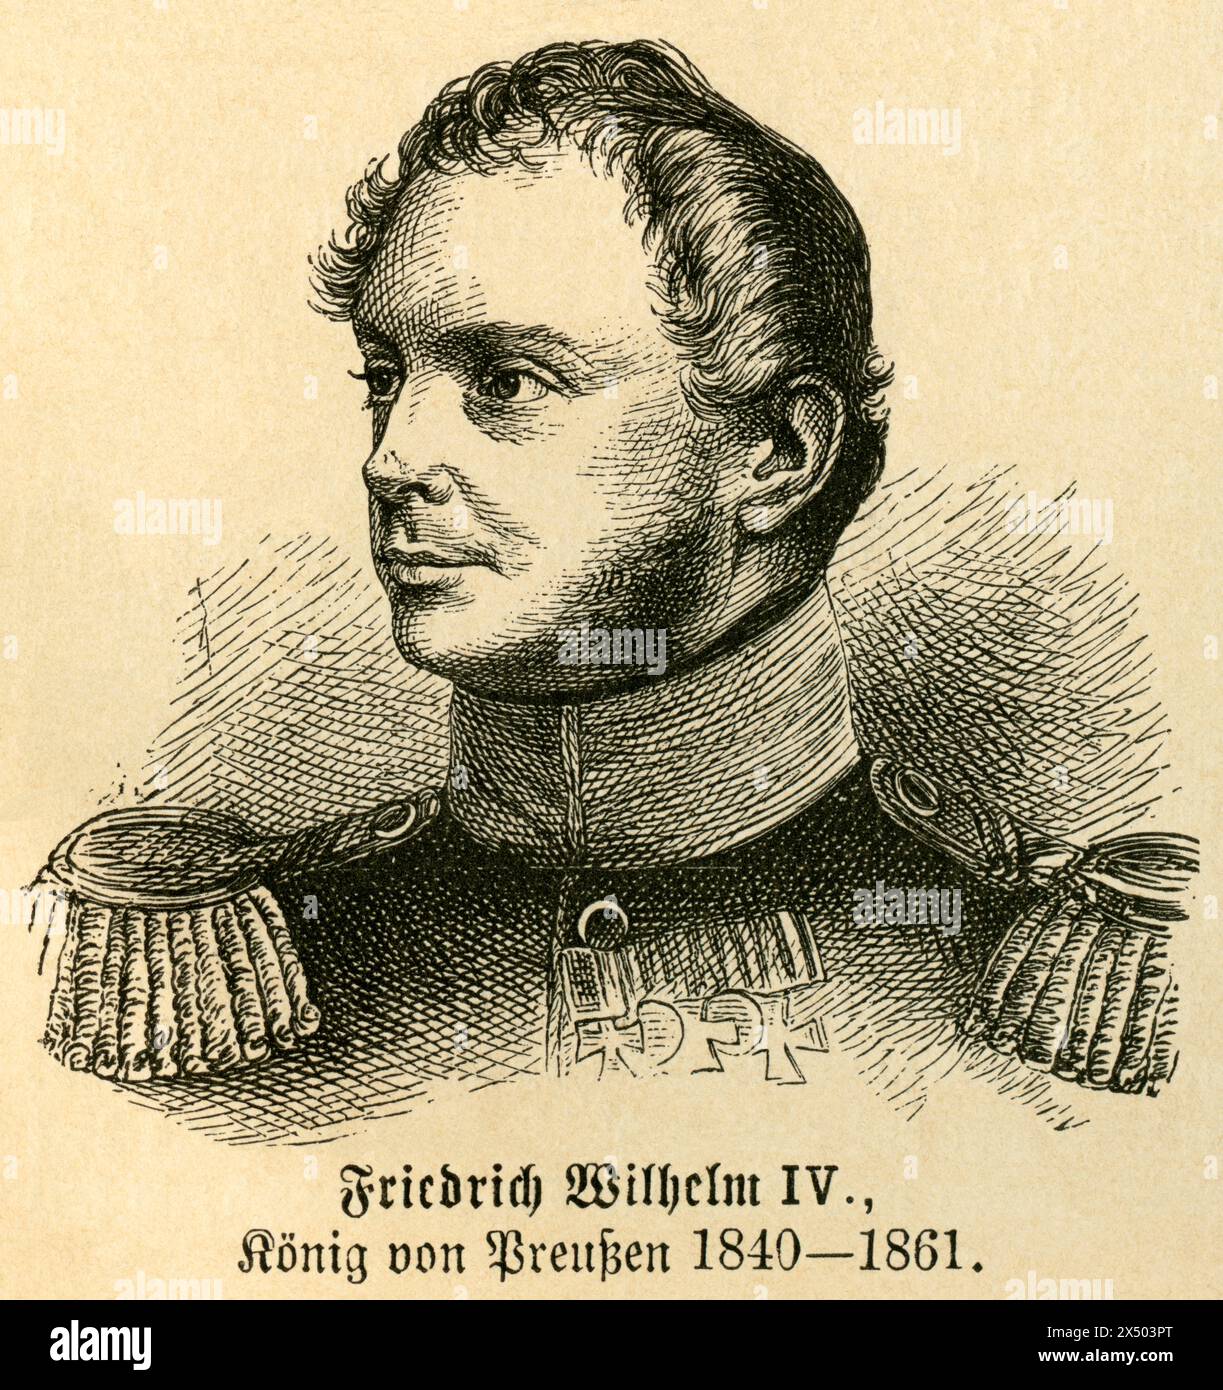 Friedrich Wilhelm IV. Von Preußen, das URHEBERRECHT DES KÜNSTLERS IST NICHT ZU LÖSCHEN Stockfoto